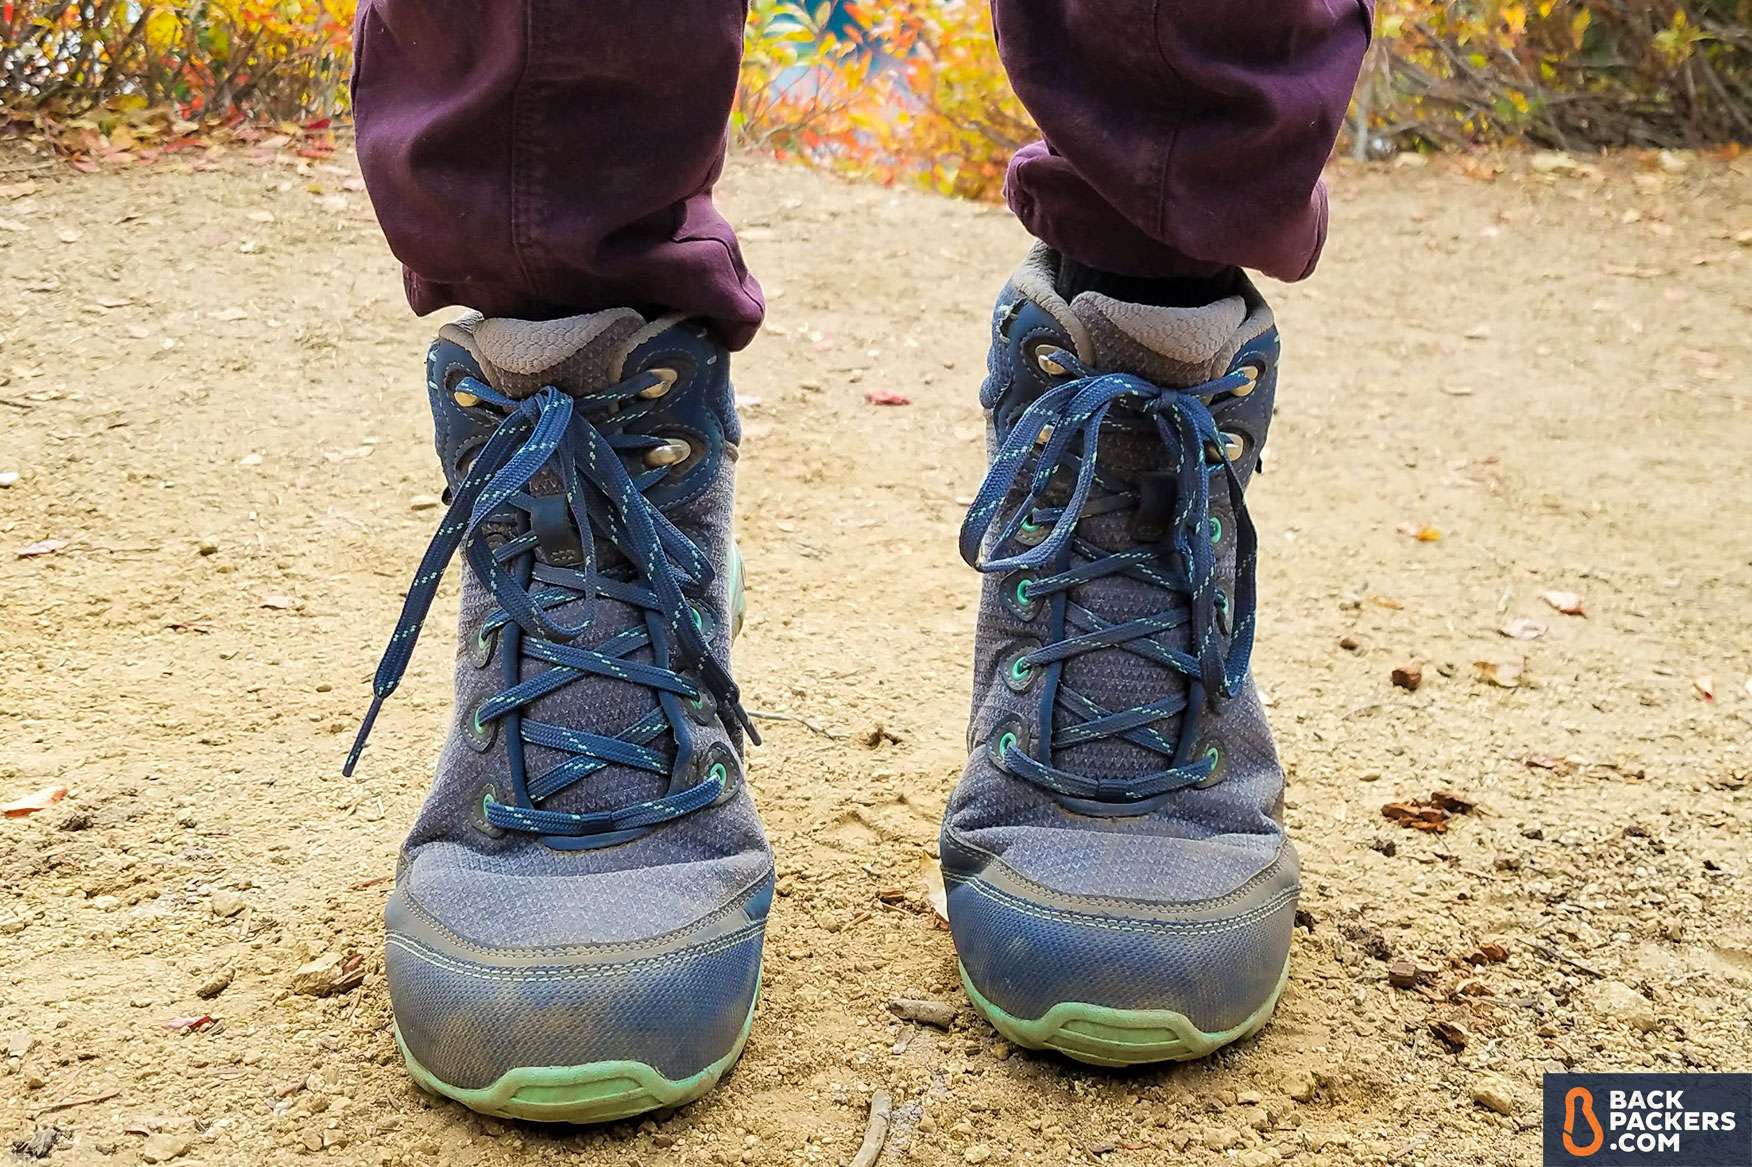 ahnu women's sugarpine hiking boot